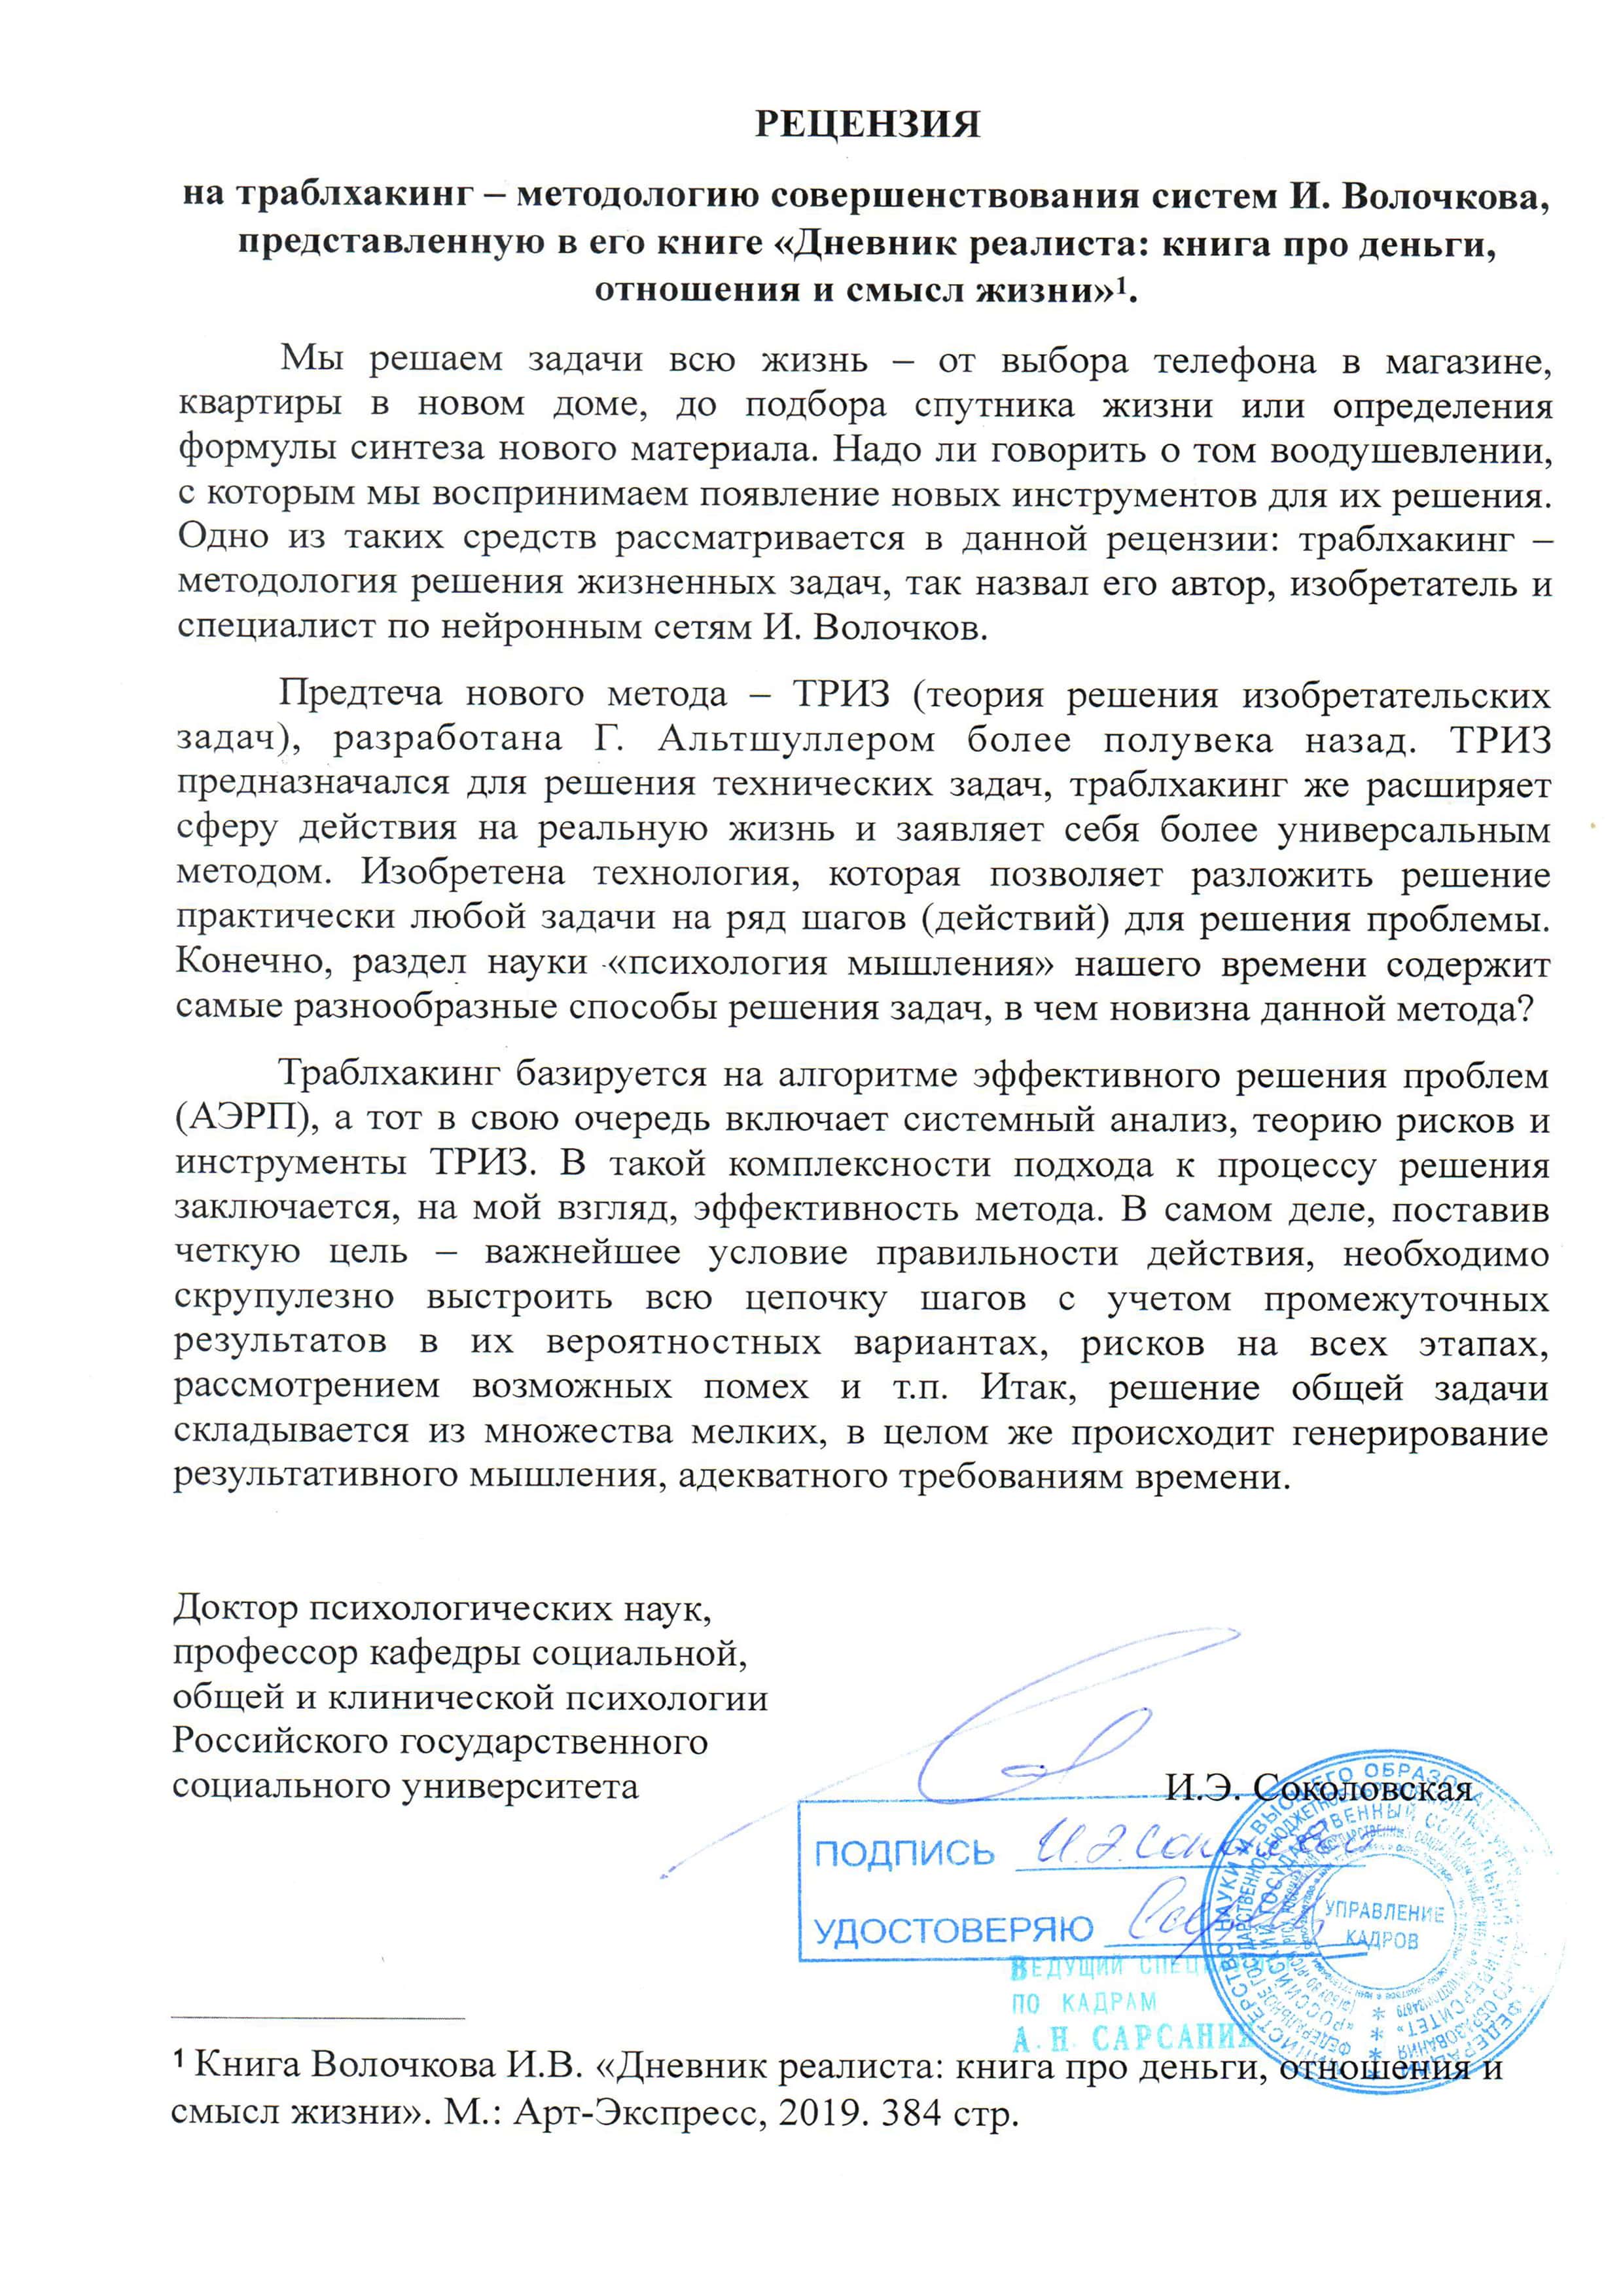 Российский государственный социальный университет (РГСУ) провел исследования по траблхакингу